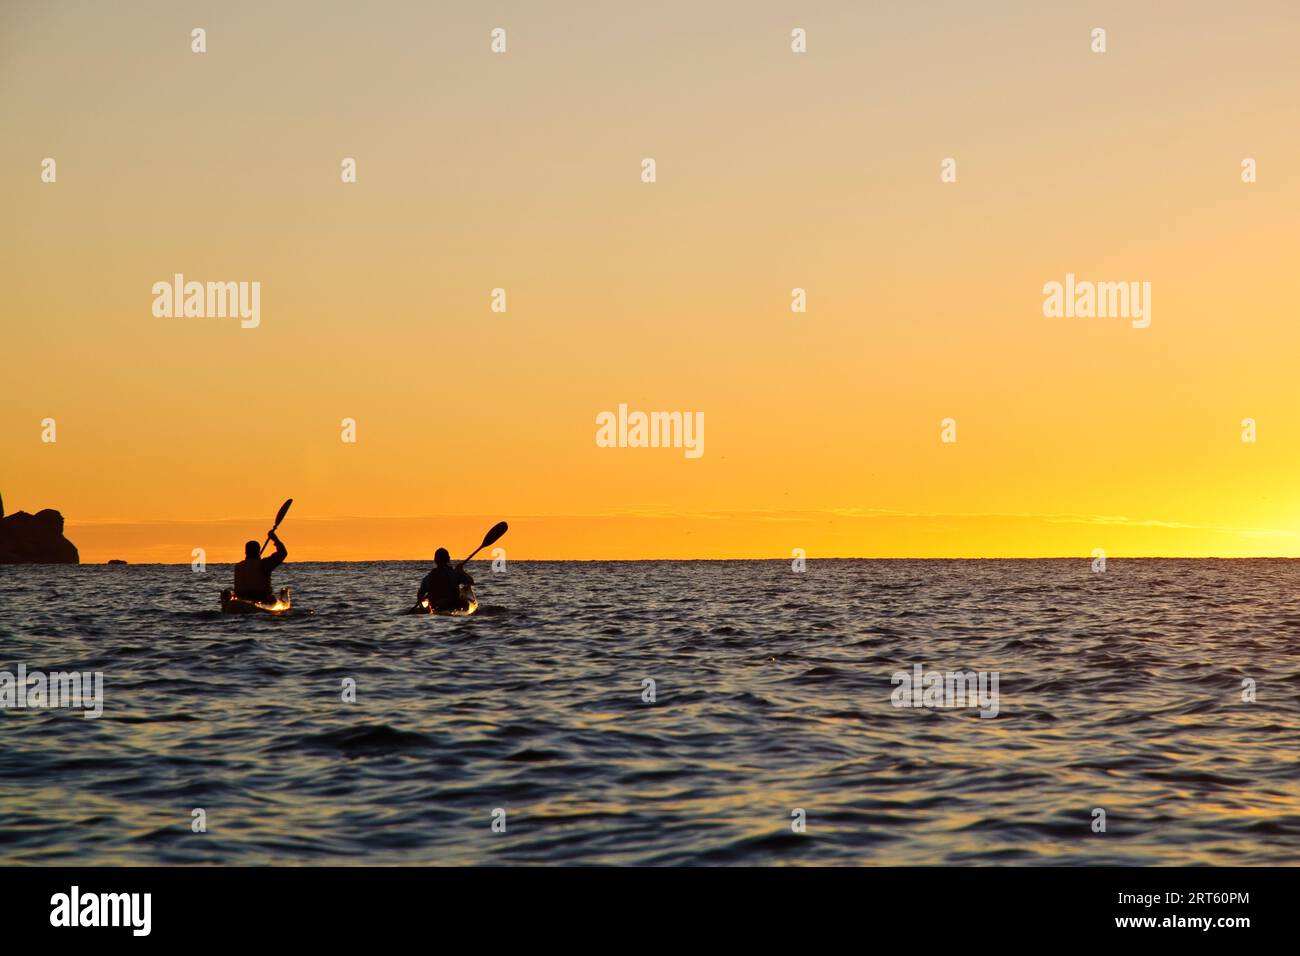 Seekajakfahrer paddeln bei Sonnenaufgang durch die Schouten Passage, Freycinet NP, Tasmanien, Australien. Stockfoto